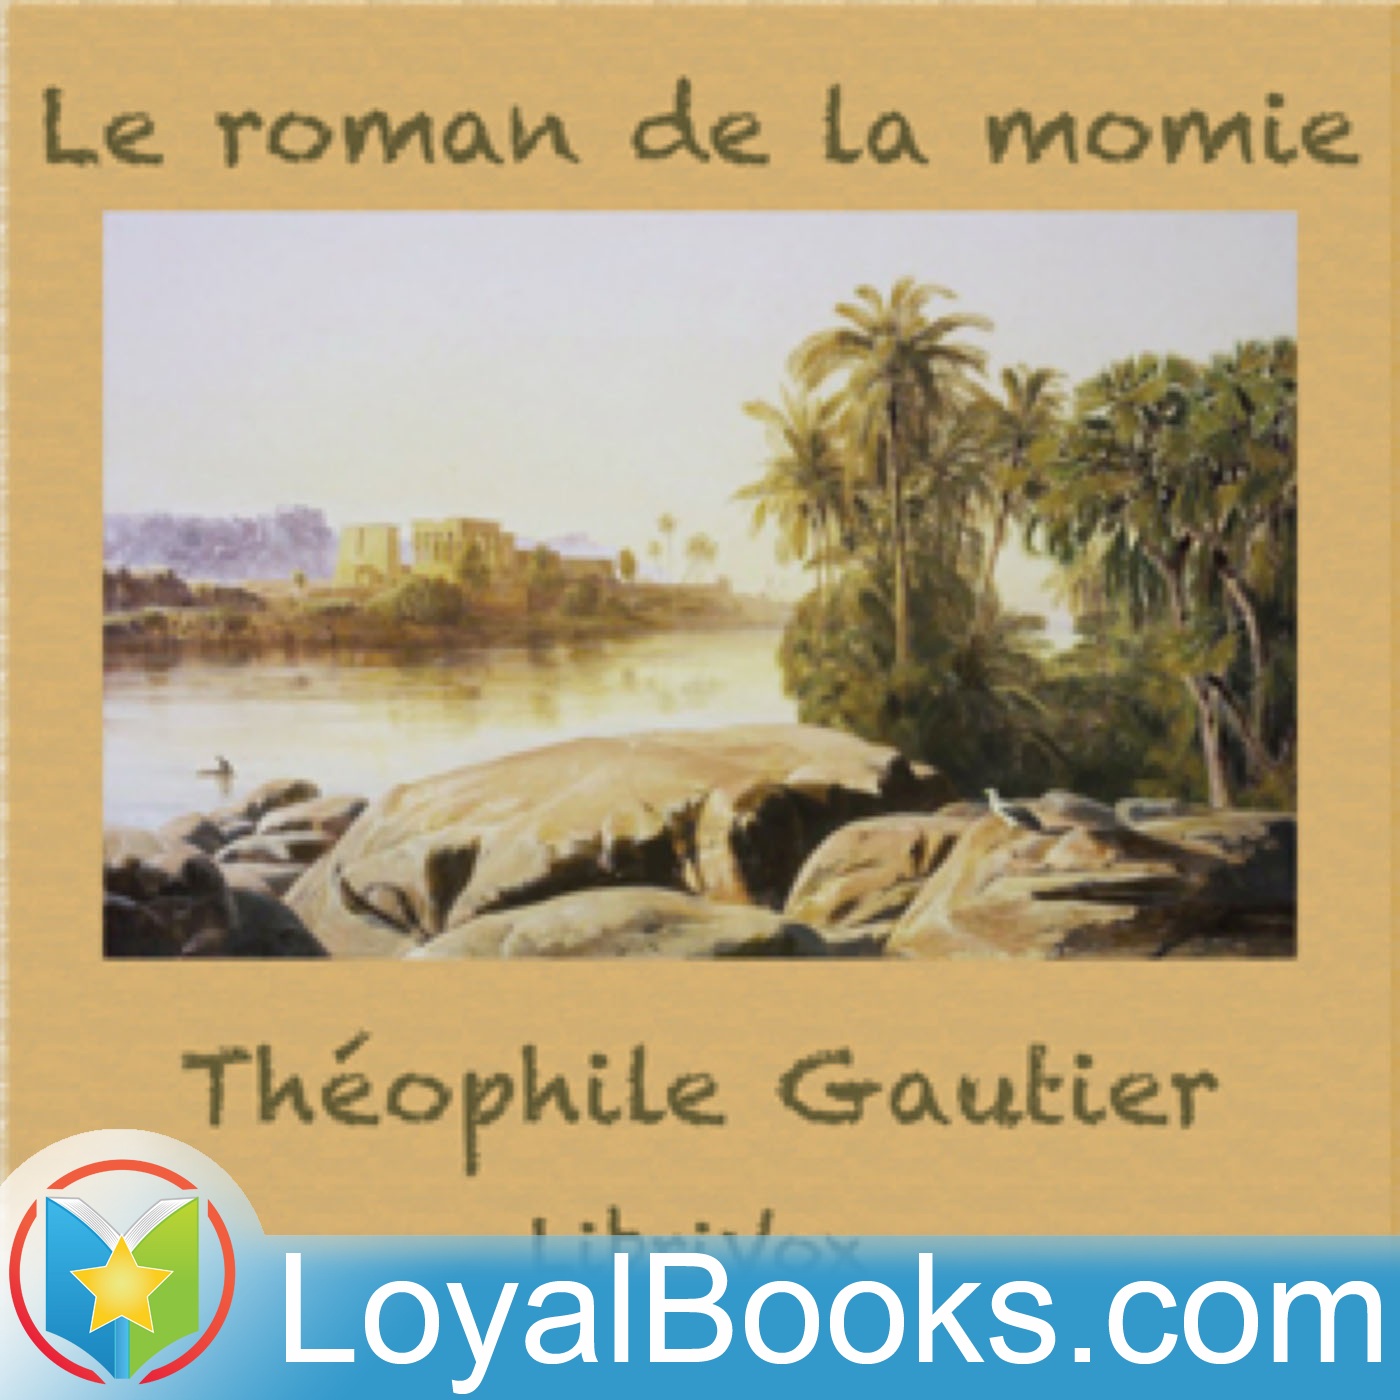 Le roman de la momie by Théophile Gautier